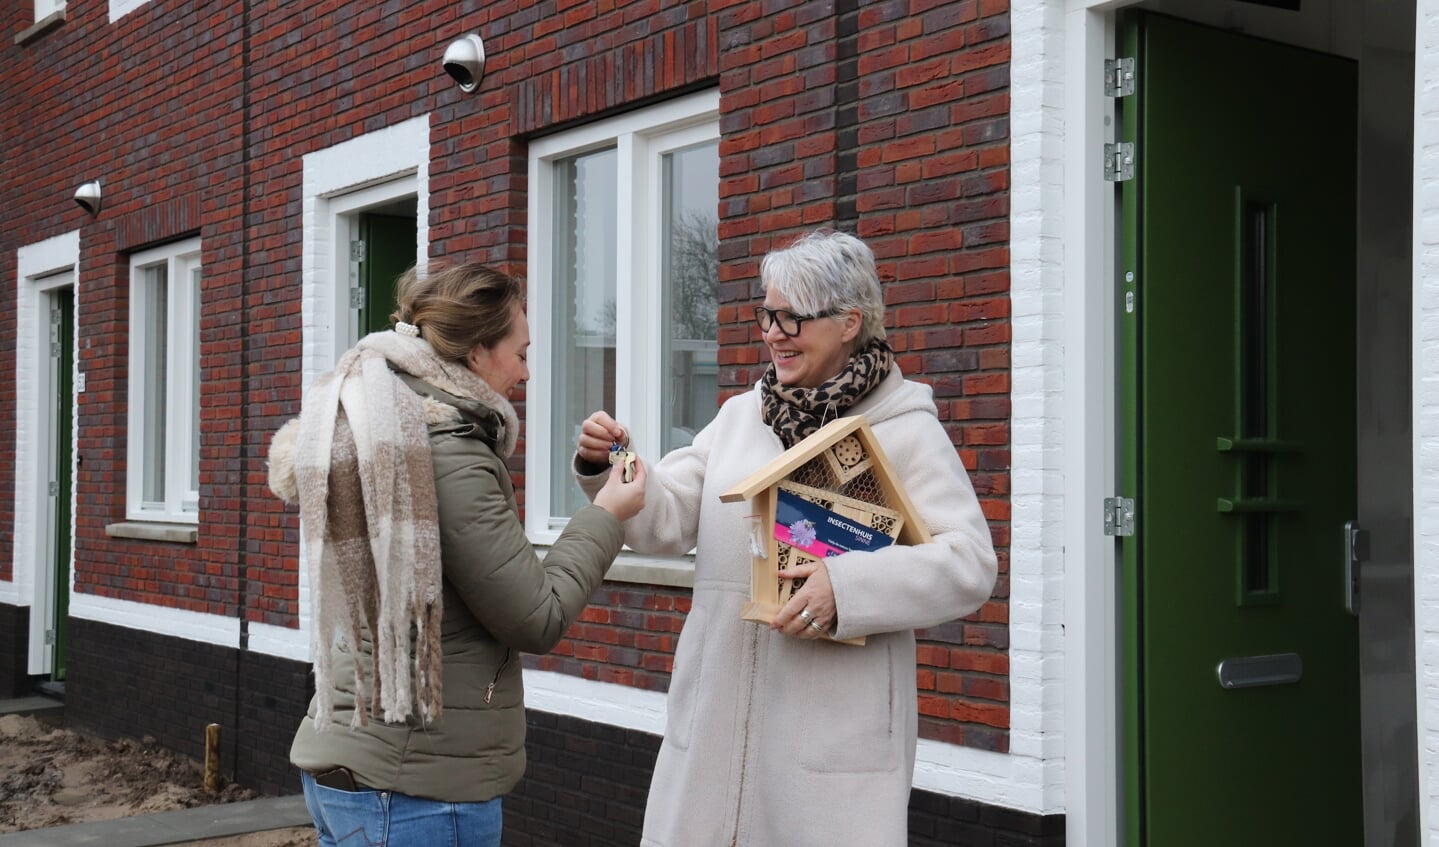 Sjanie van den Dool, manager Wonen Poort6, overhandigt eerste sleutel nieuwbouwwoningen Irenelaan